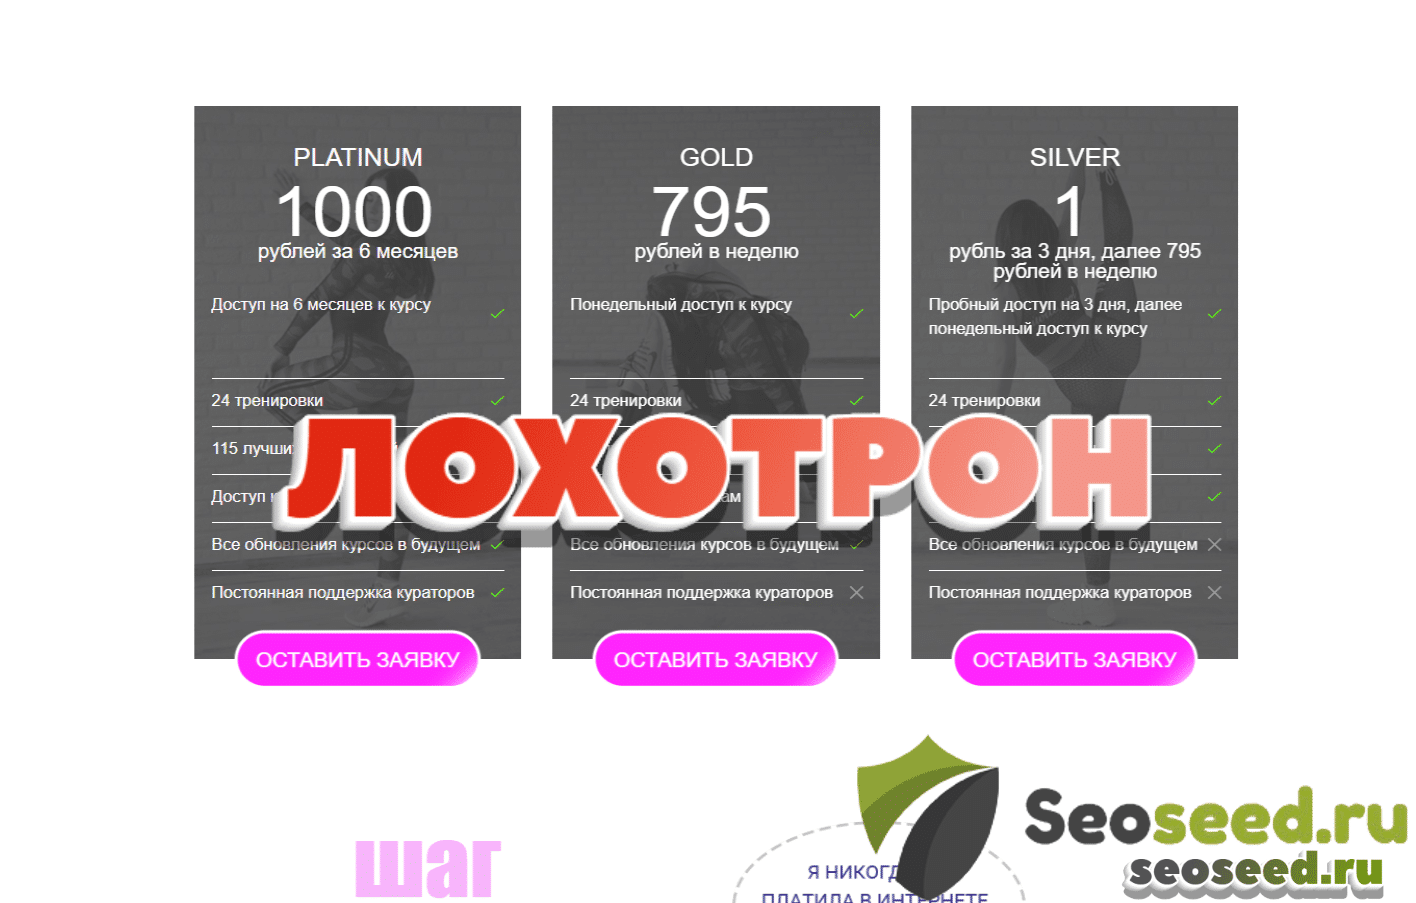 (Twerkni - онлайн-тренировки. За что списали деньги и как отключить подписку от twerkni.ru